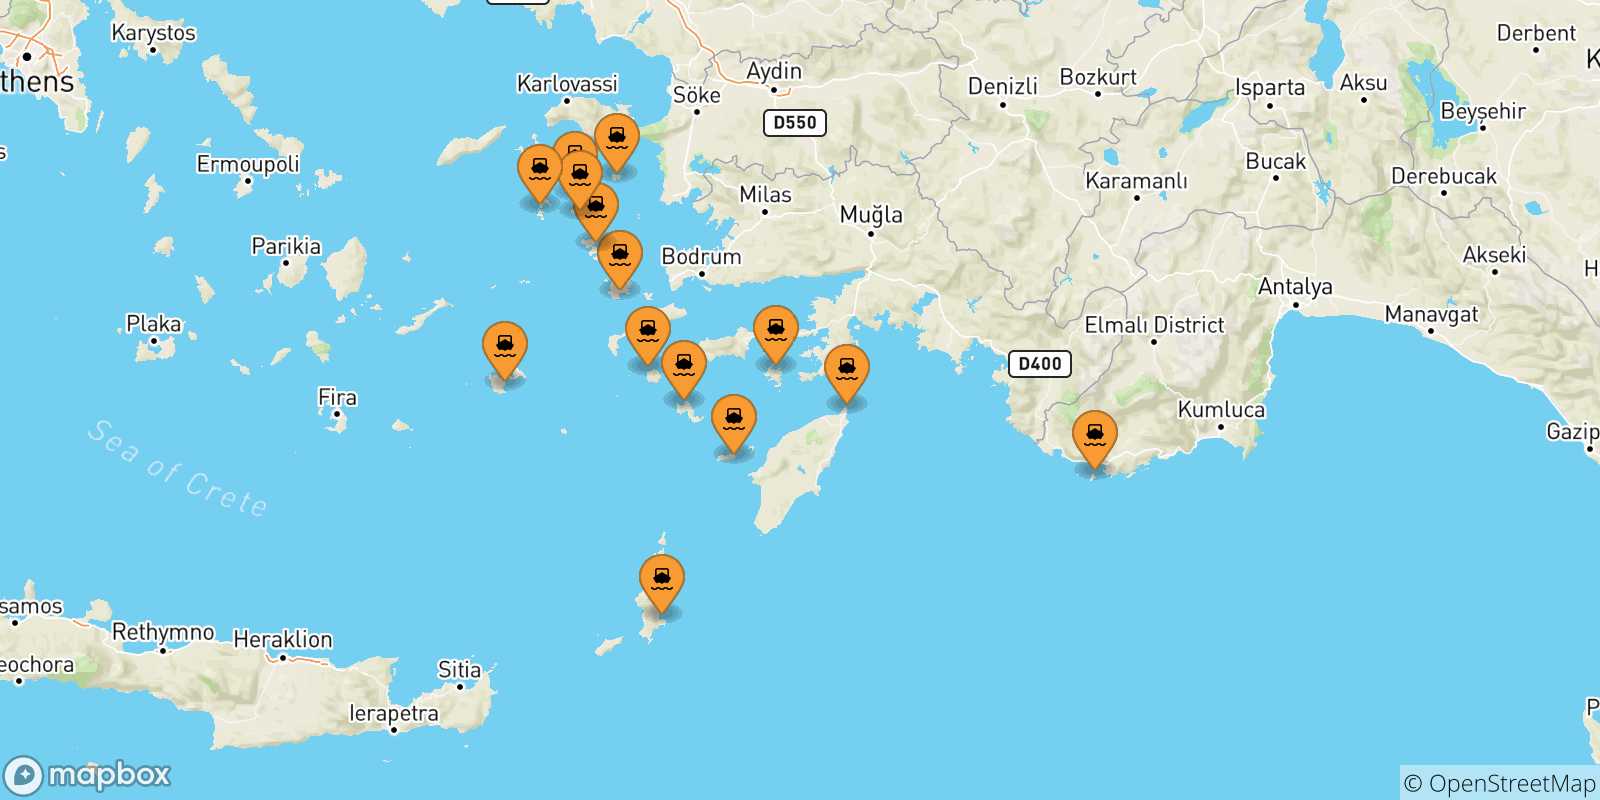 Mappa delle possibili rotte tra le Isole Dodecaneso e Kos